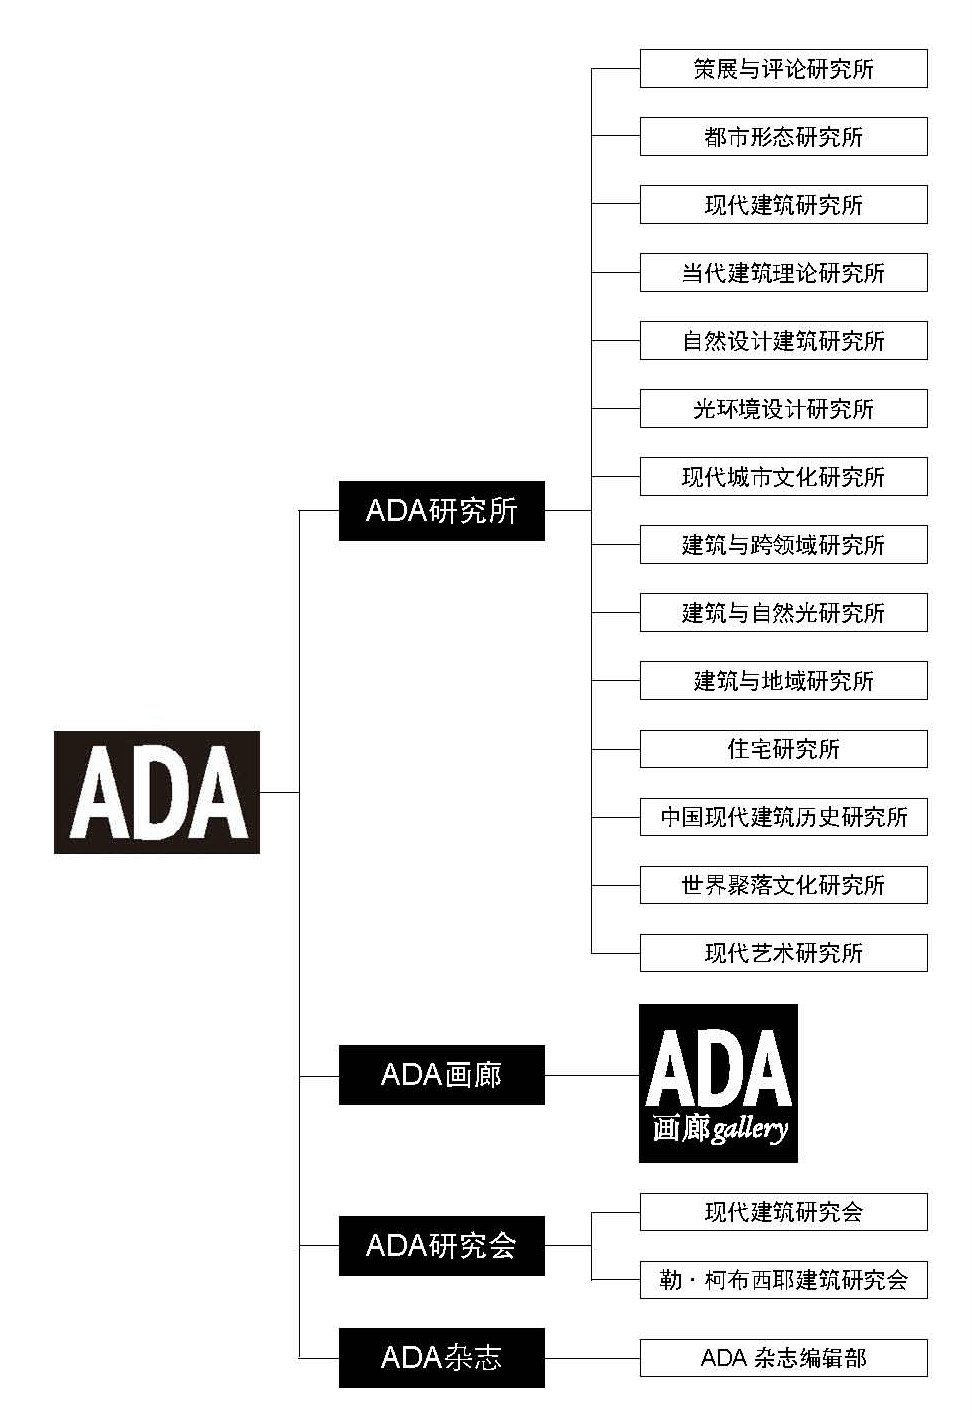 北京建築大學建築設計藝術(ADA)研究中心